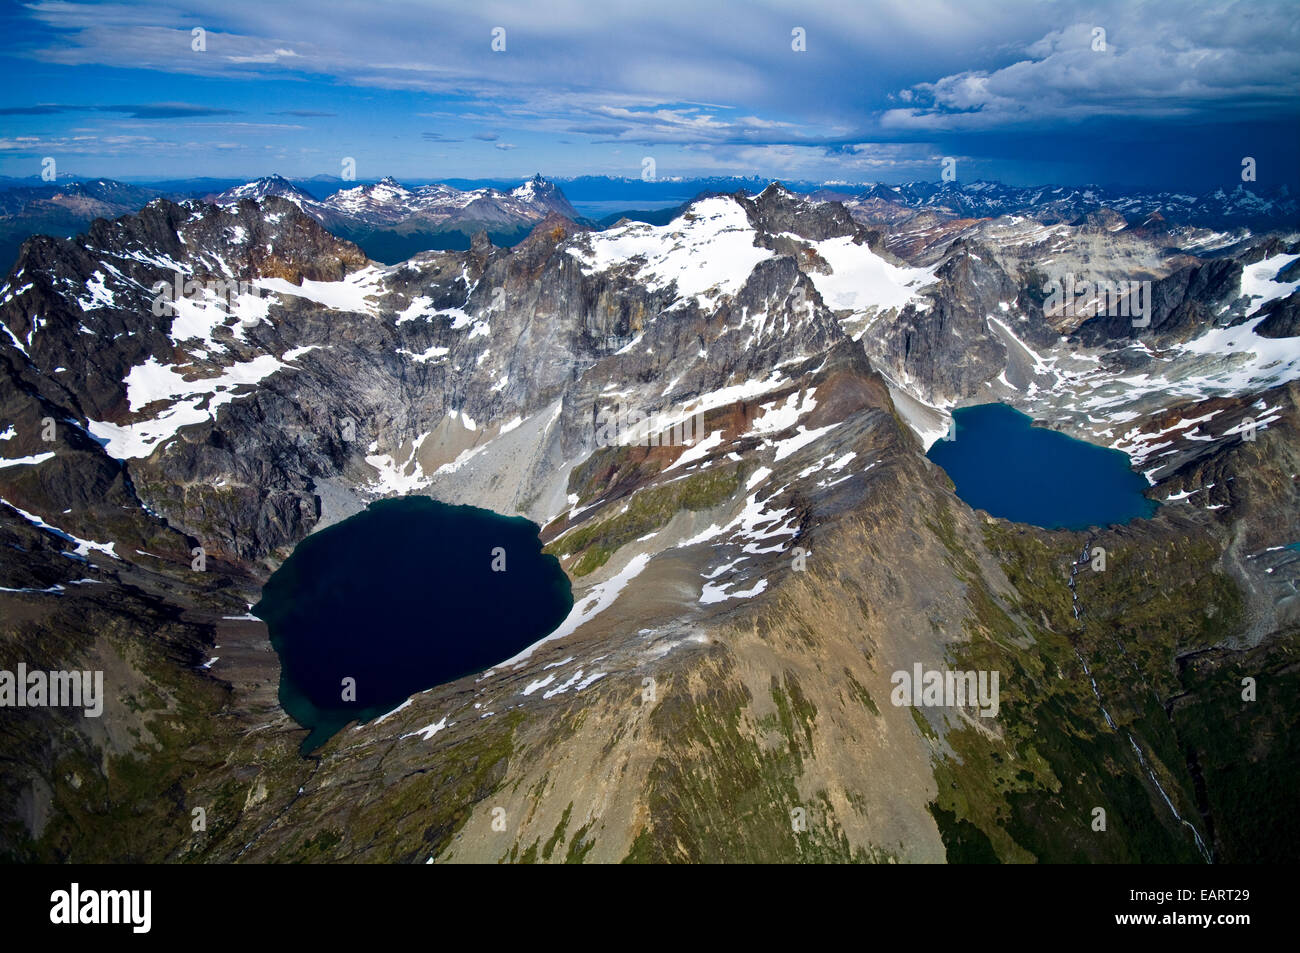 La neige et la glace des pics drapés berceau deux lacs glaciaires turquoise à distance. Banque D'Images